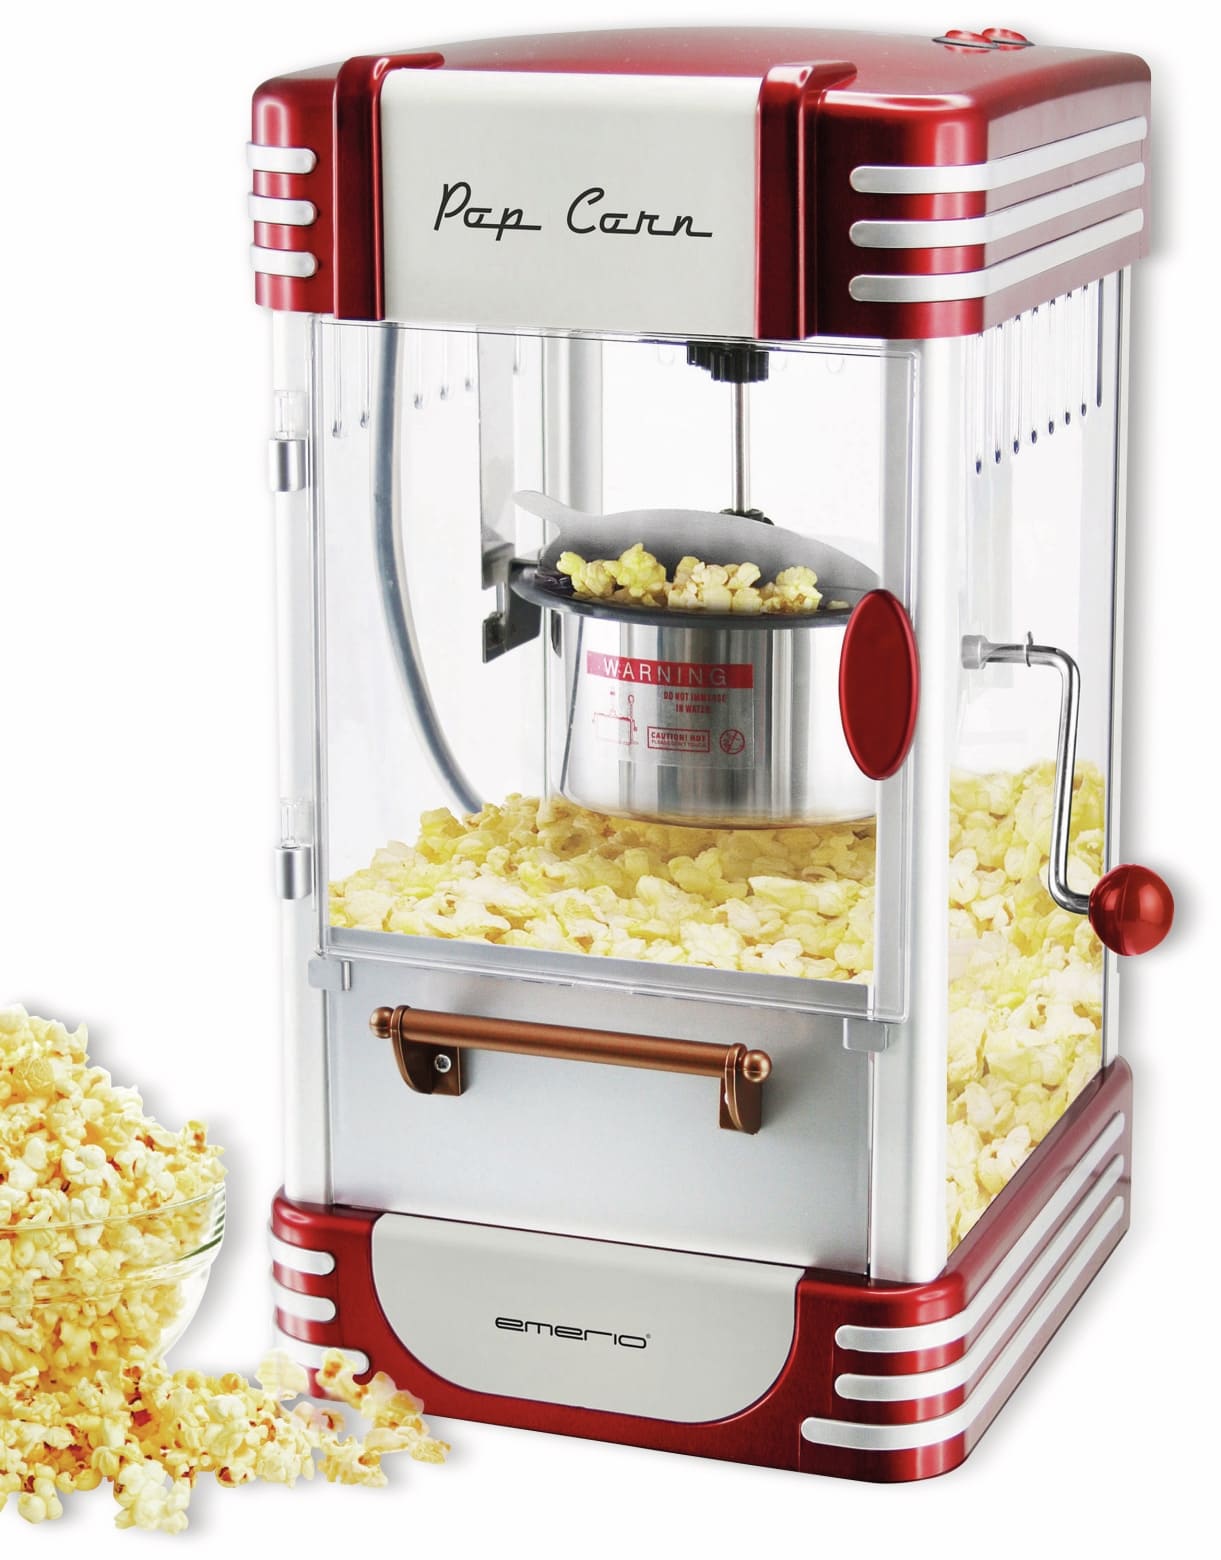 EMERIO Popcornmaschine POM-120650, 360 W